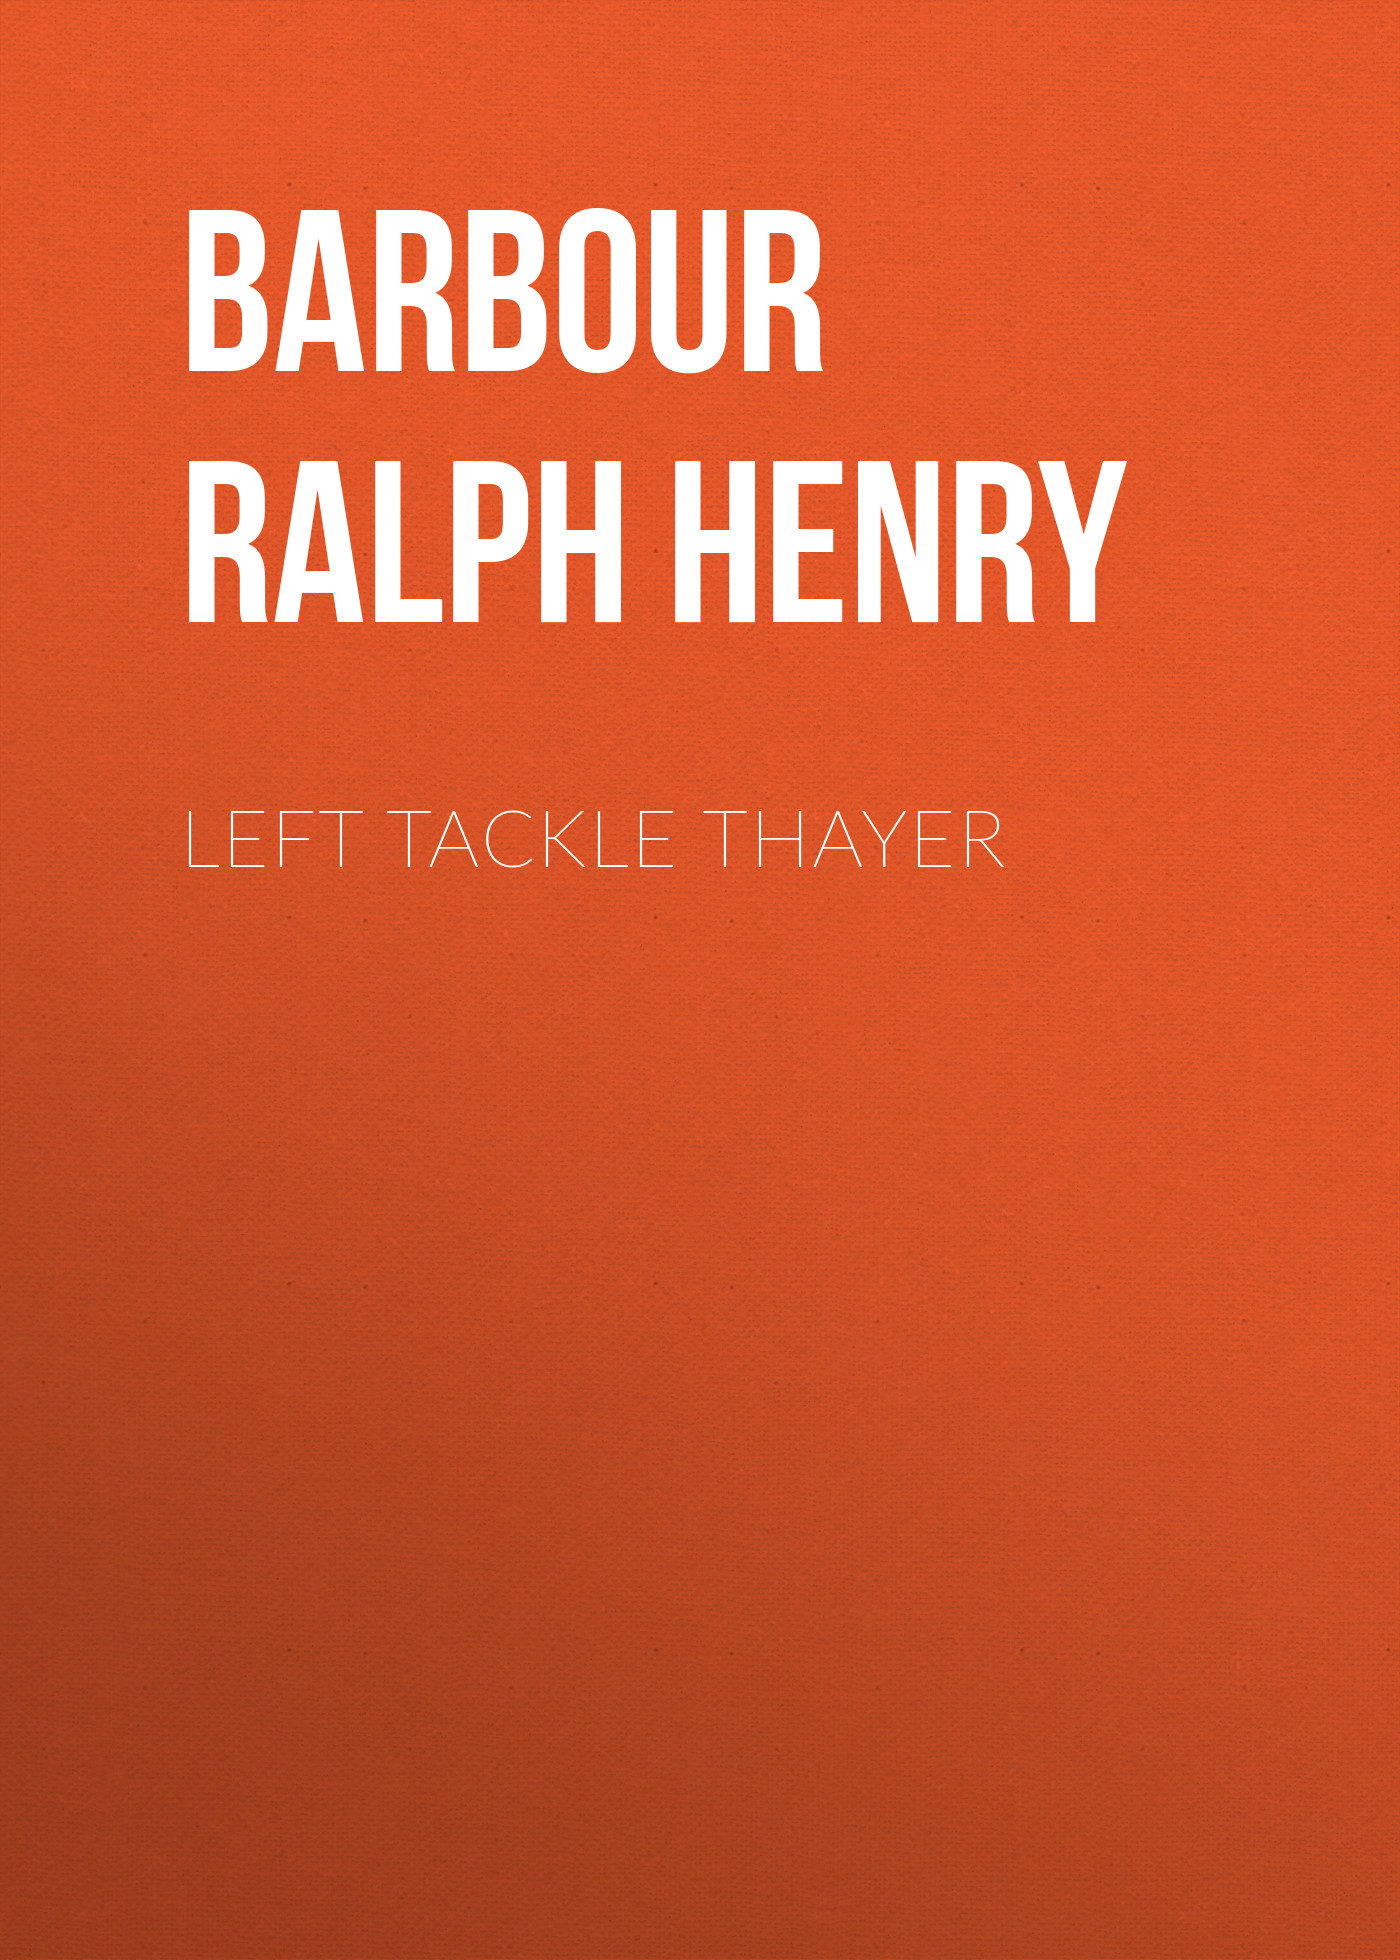 Книга Left Tackle Thayer из серии , созданная Ralph Barbour, может относится к жанру Зарубежные детские книги, Зарубежная старинная литература, Зарубежная классика. Стоимость электронной книги Left Tackle Thayer с идентификатором 36365094 составляет 0 руб.